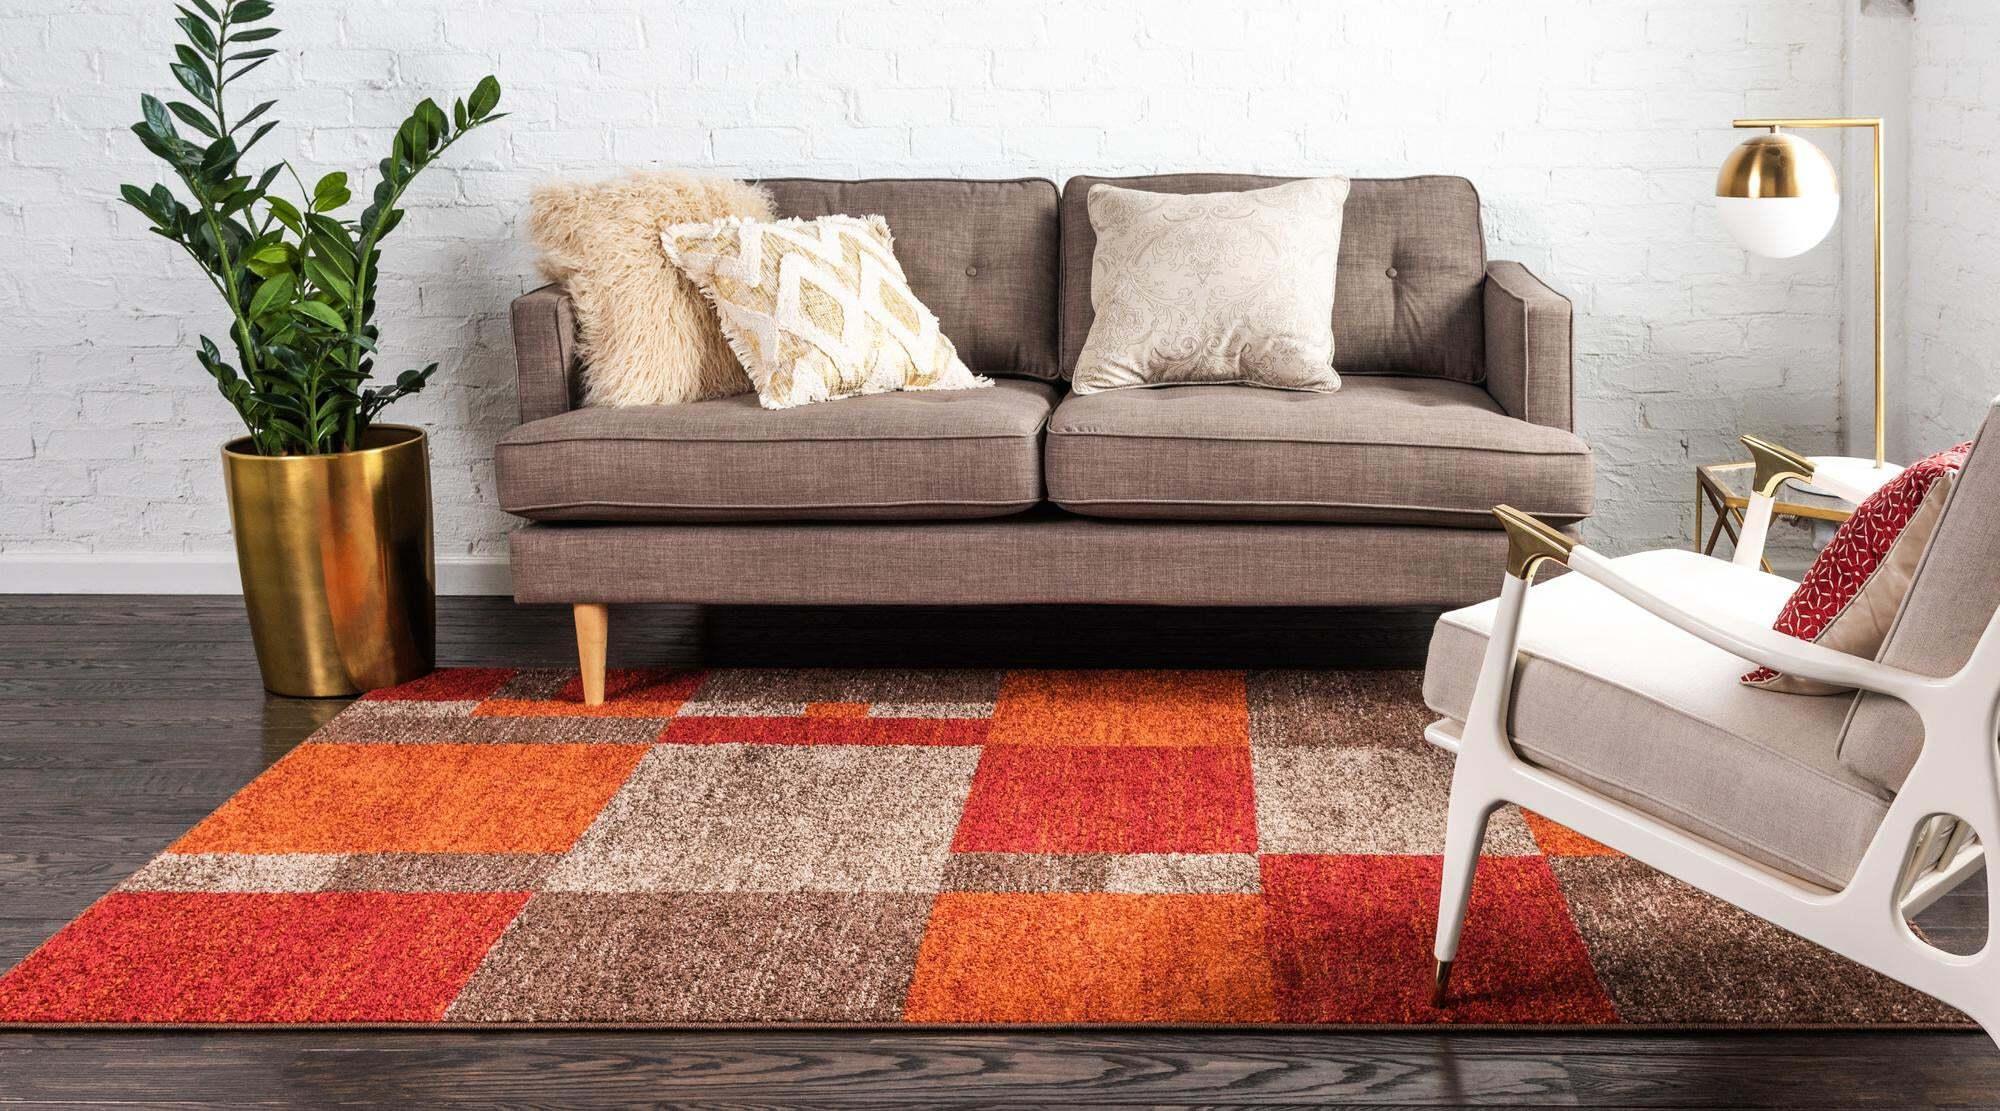 Unique Loom Indoor Rugs - Autumn Geometric 6x9 Rectangular Rug Multi & Dark Brown